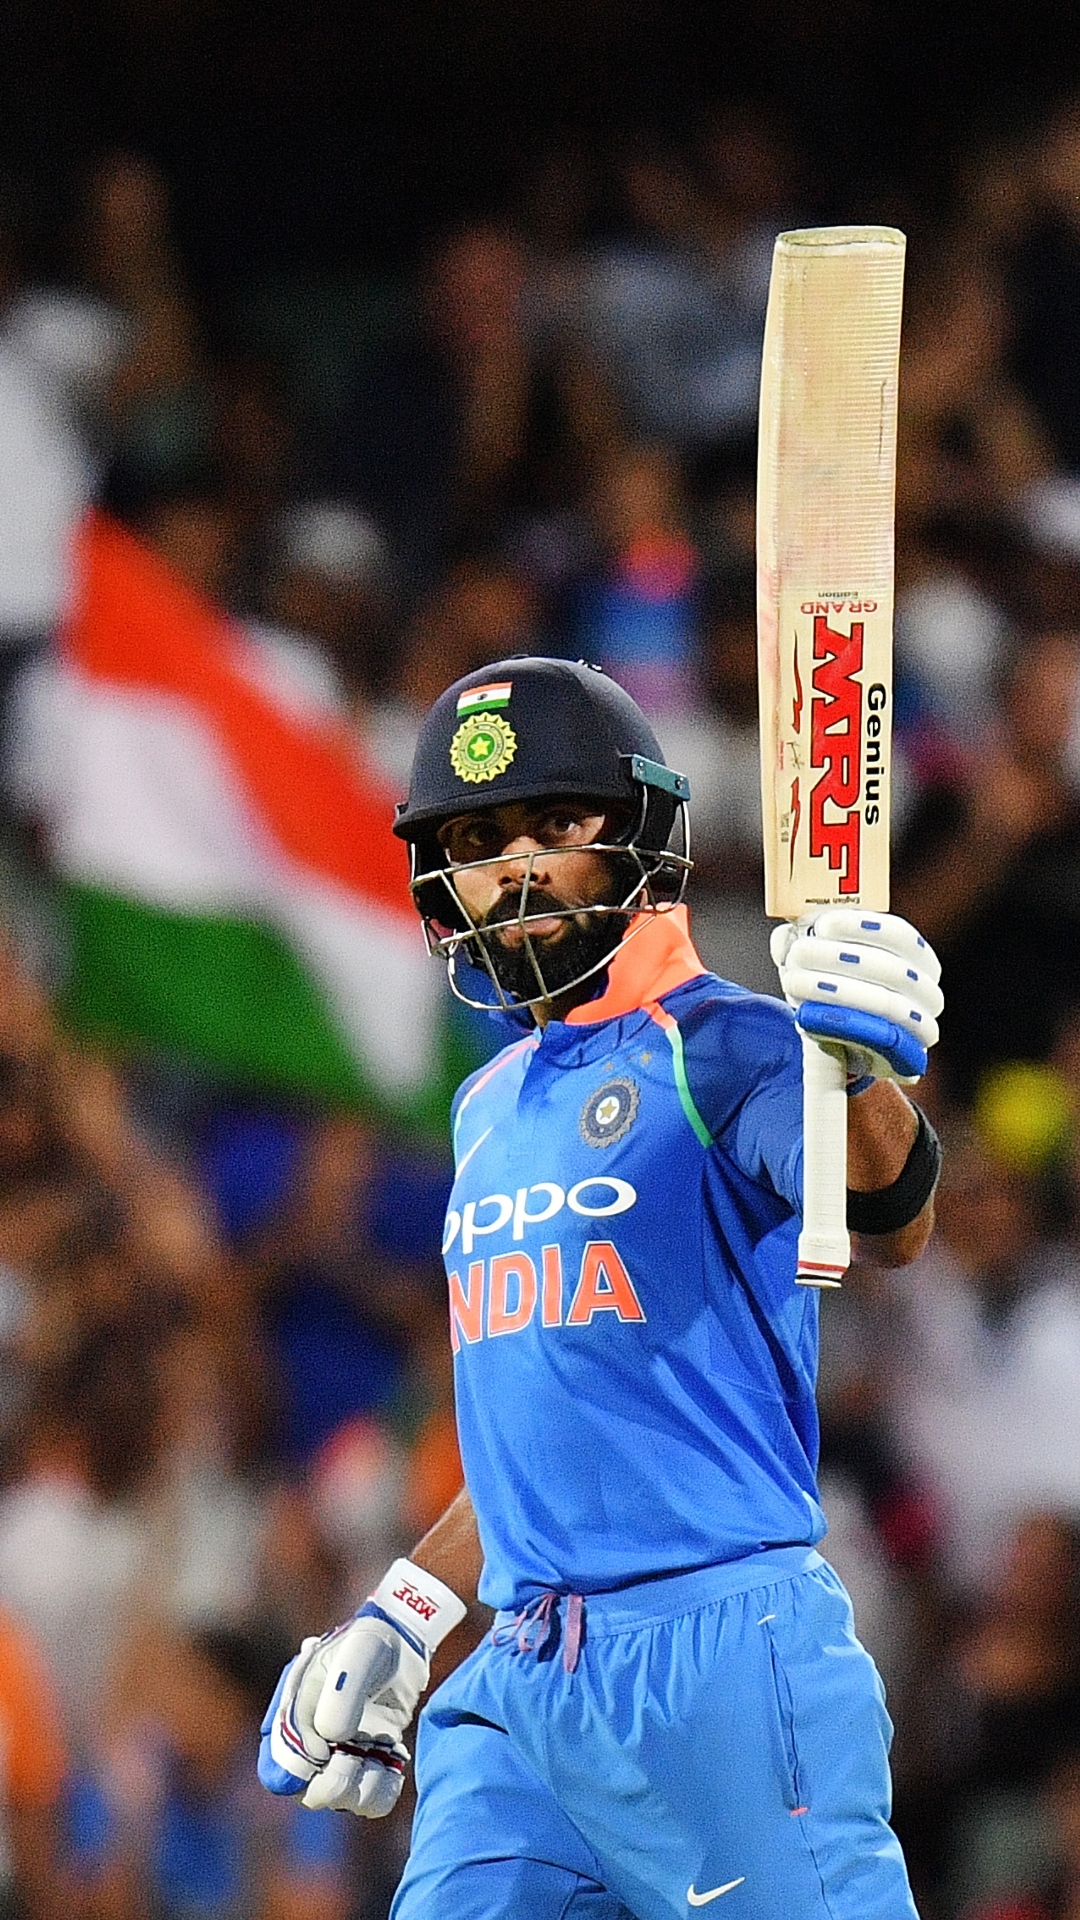 ऑस्ट्रेलिया के खिलाफ वनडे में सबसे ज्यादा रन बनाने वाले भारतीय बल्लेबाजों की लिस्ट